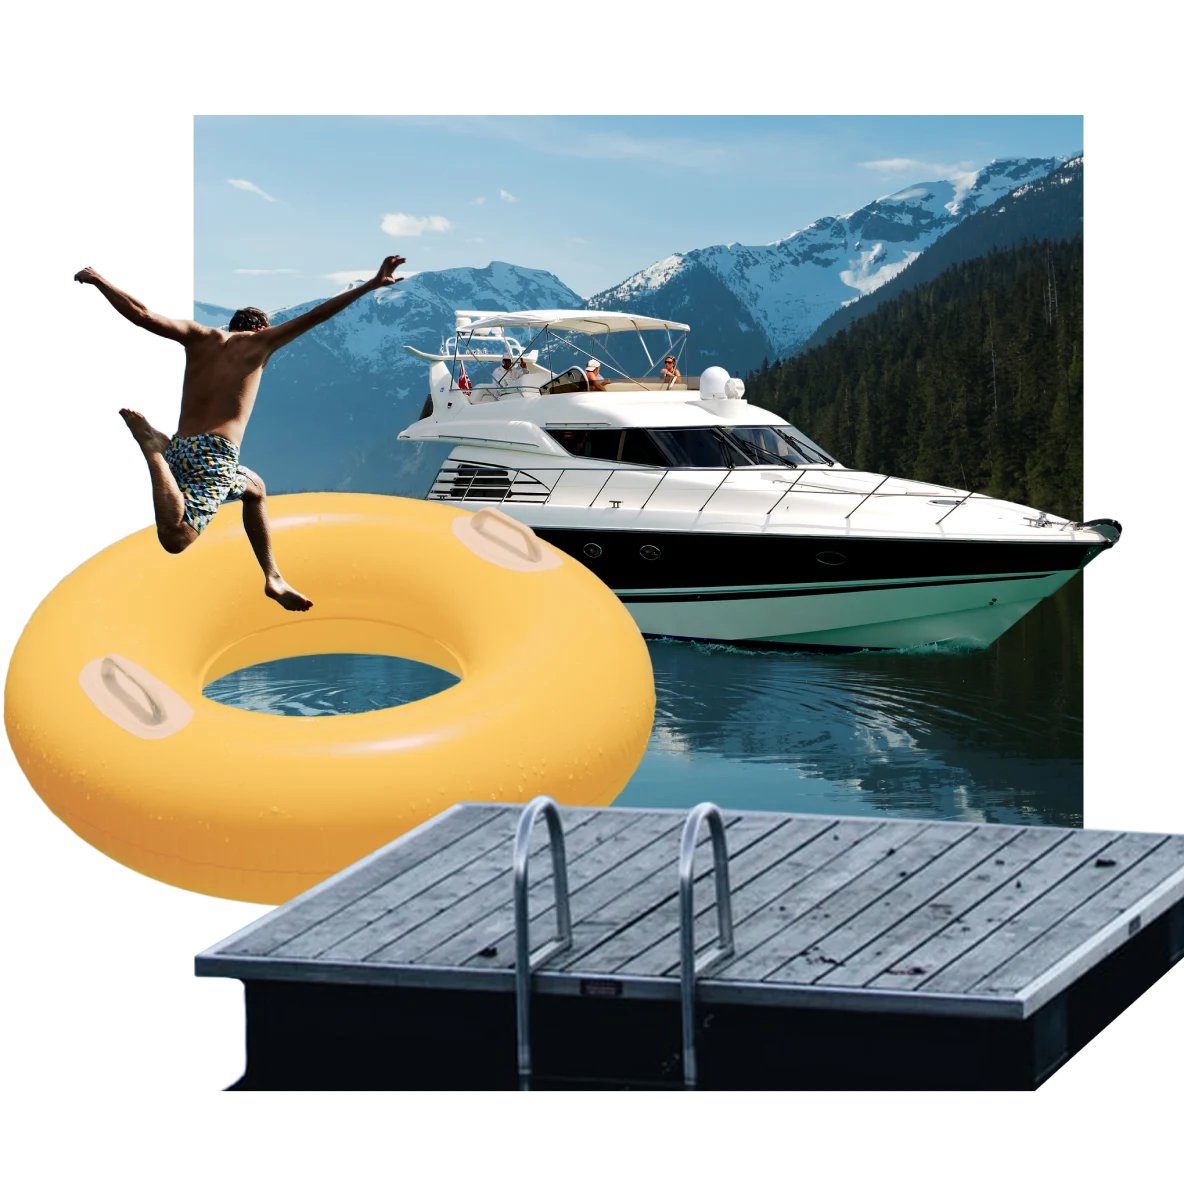 湖をテーマにしたアイテムのコラージュ。画像中央に青灰色の湖に浮かぶボート、手前にデッキ。黄色いドーナツ型の大きな浮き輪の中に飛び込もうとしている人。背景は雪山の景色。